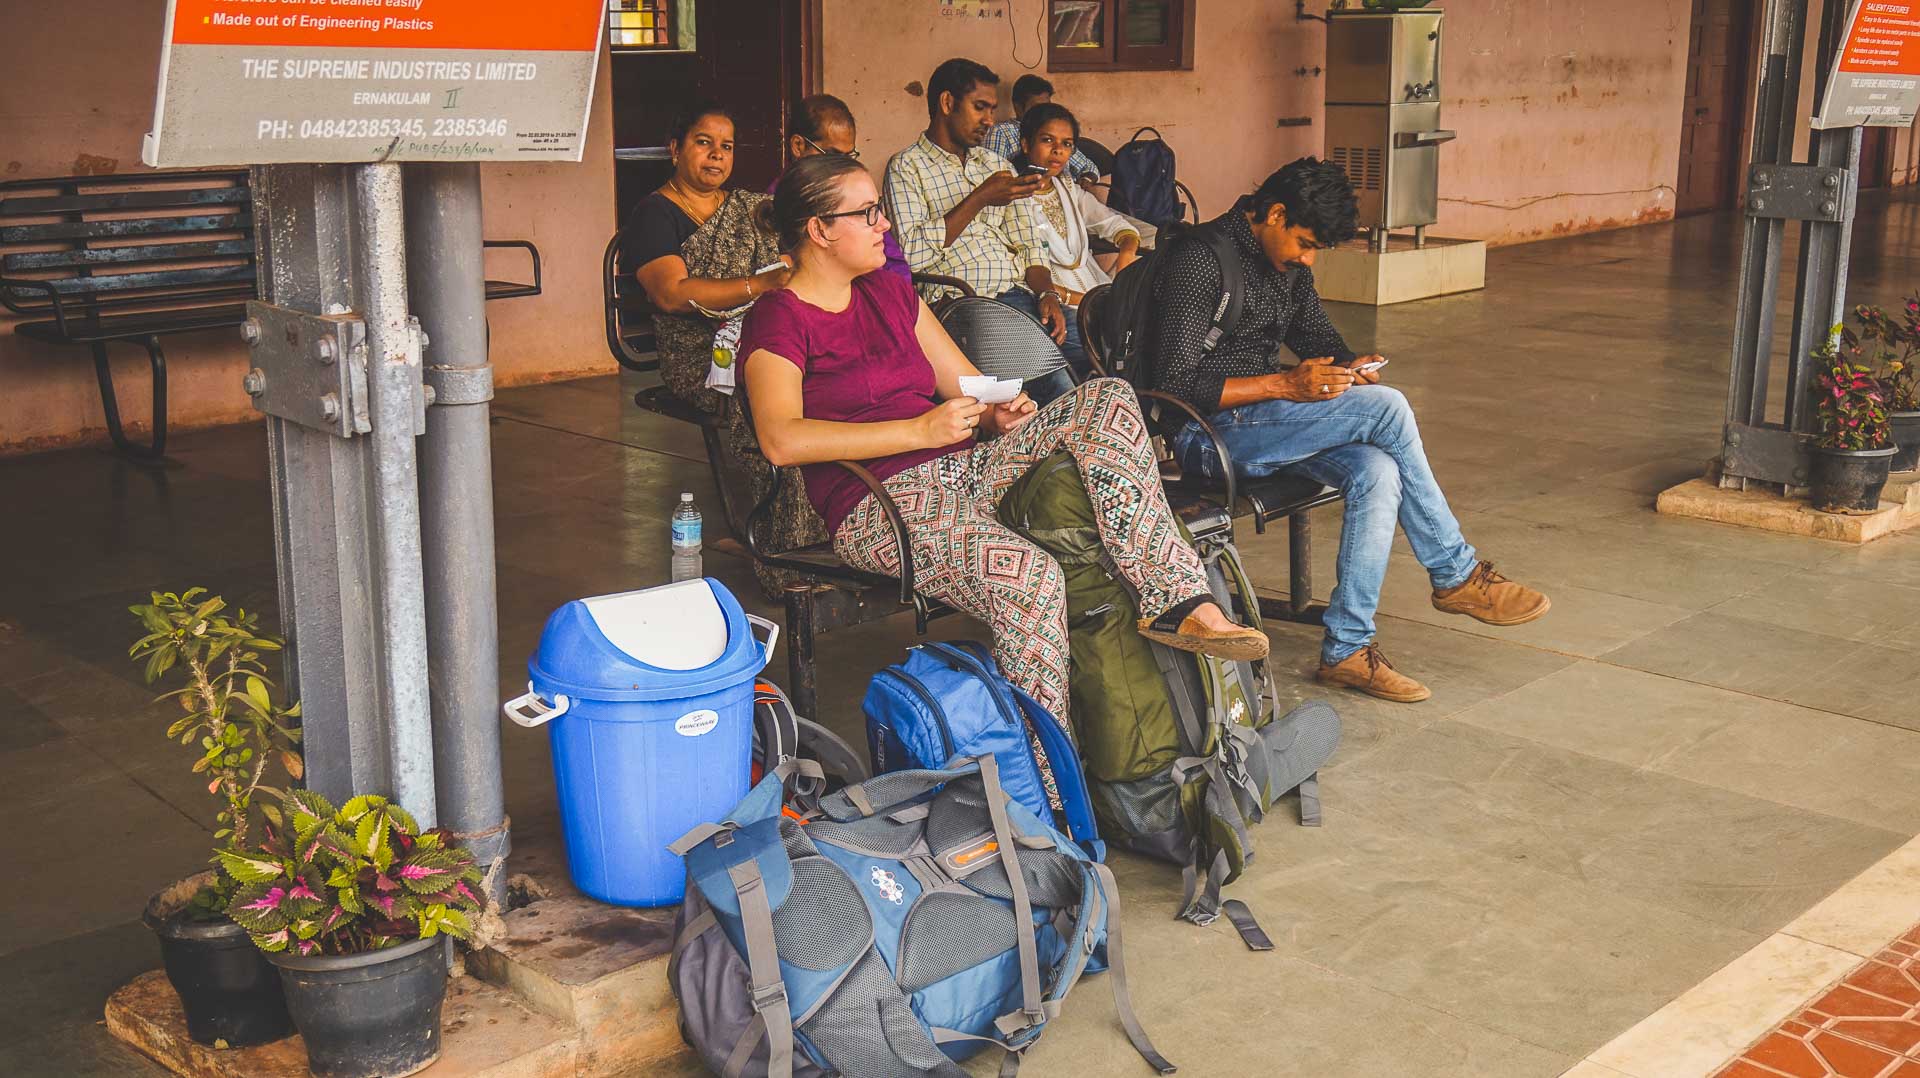 Reizen met de trein in India